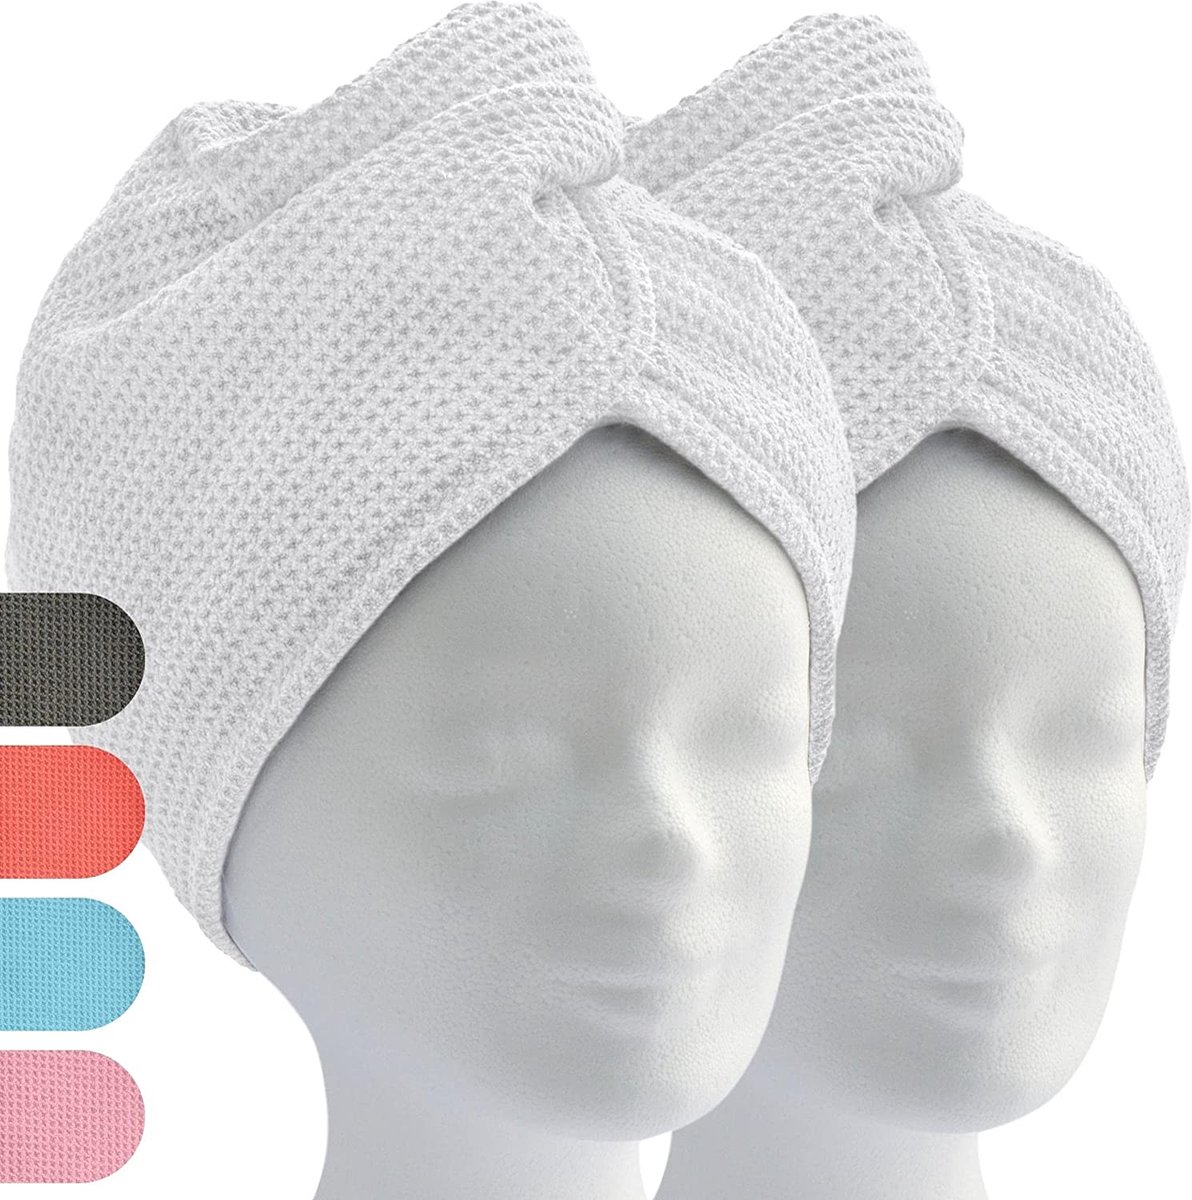 ELEXACARE haartulband, tulband handdoek met knoop (2 stuks, wit) microvezel handdoek voor hoofd en lang haar